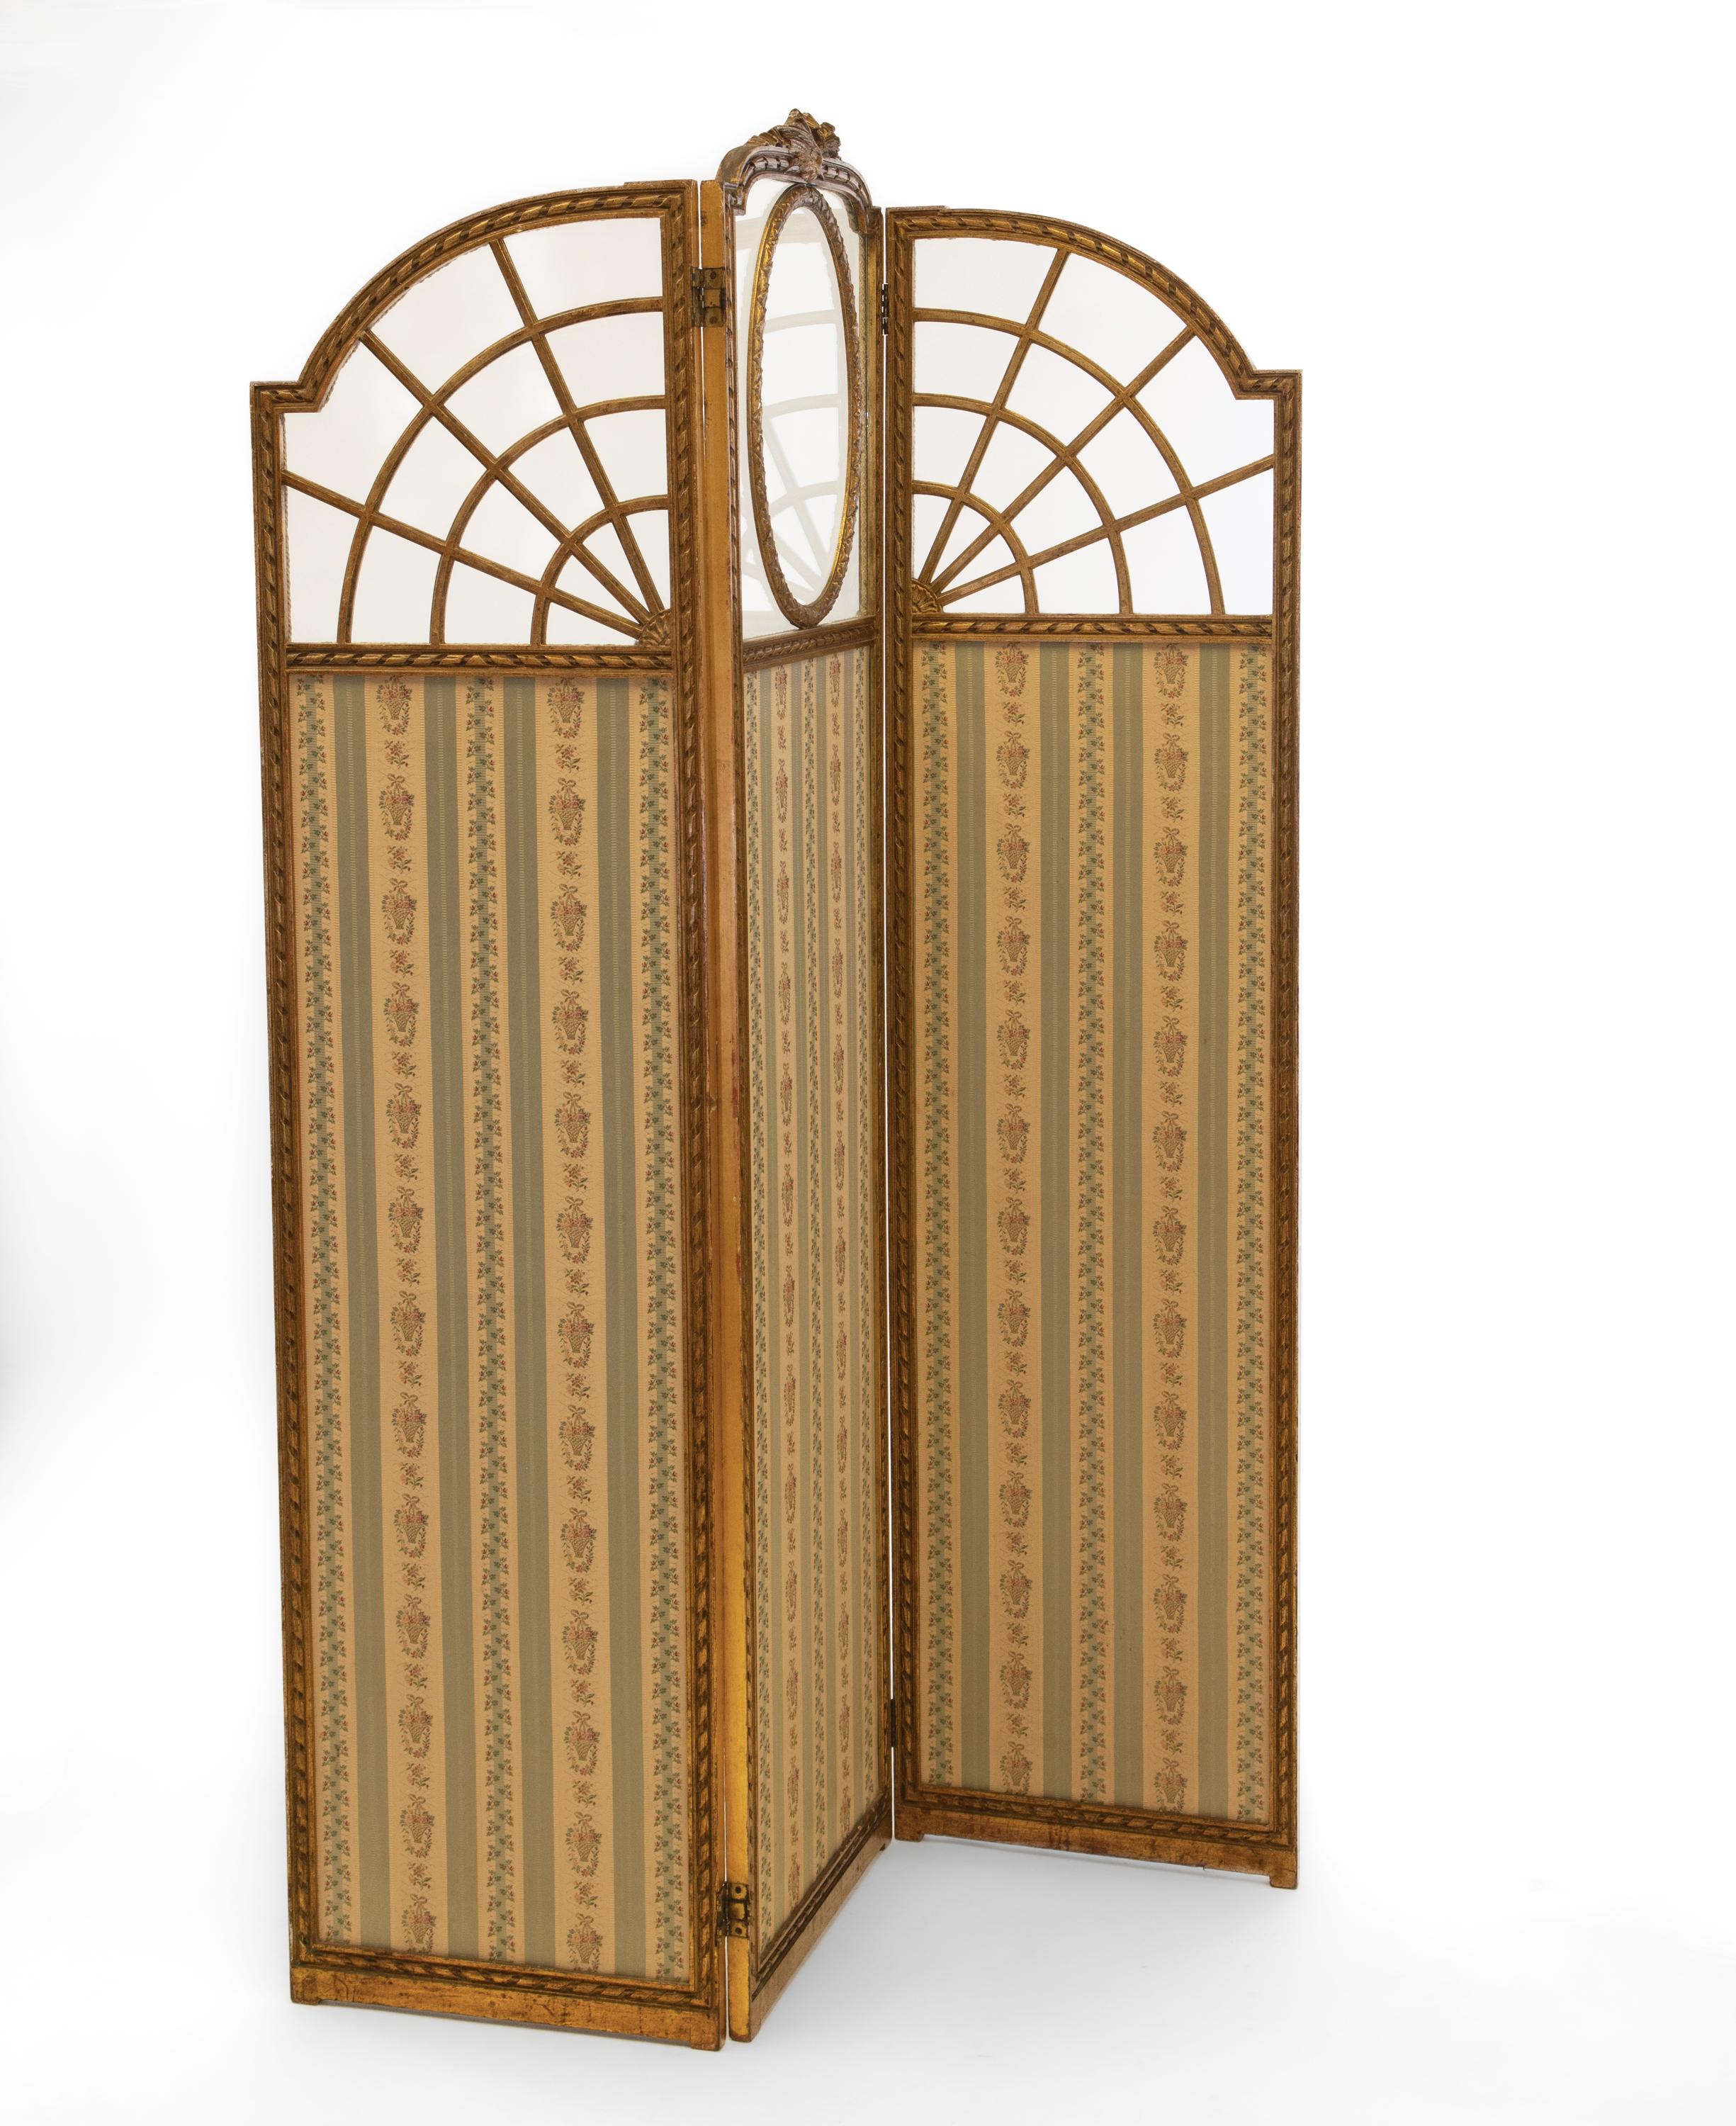 Eine schöne antike Edwardian vergoldetem Holz drei Panel-Bildschirm. Um 1900.

Die Lieferung ist im Preis für alle Gebiete in MAINLAND England & Wales INBEGRIFFEN. 

Das Vergoldungsmotiv auf jeder Platte ist auf Glas aufgelegt. Die mittlere Platte